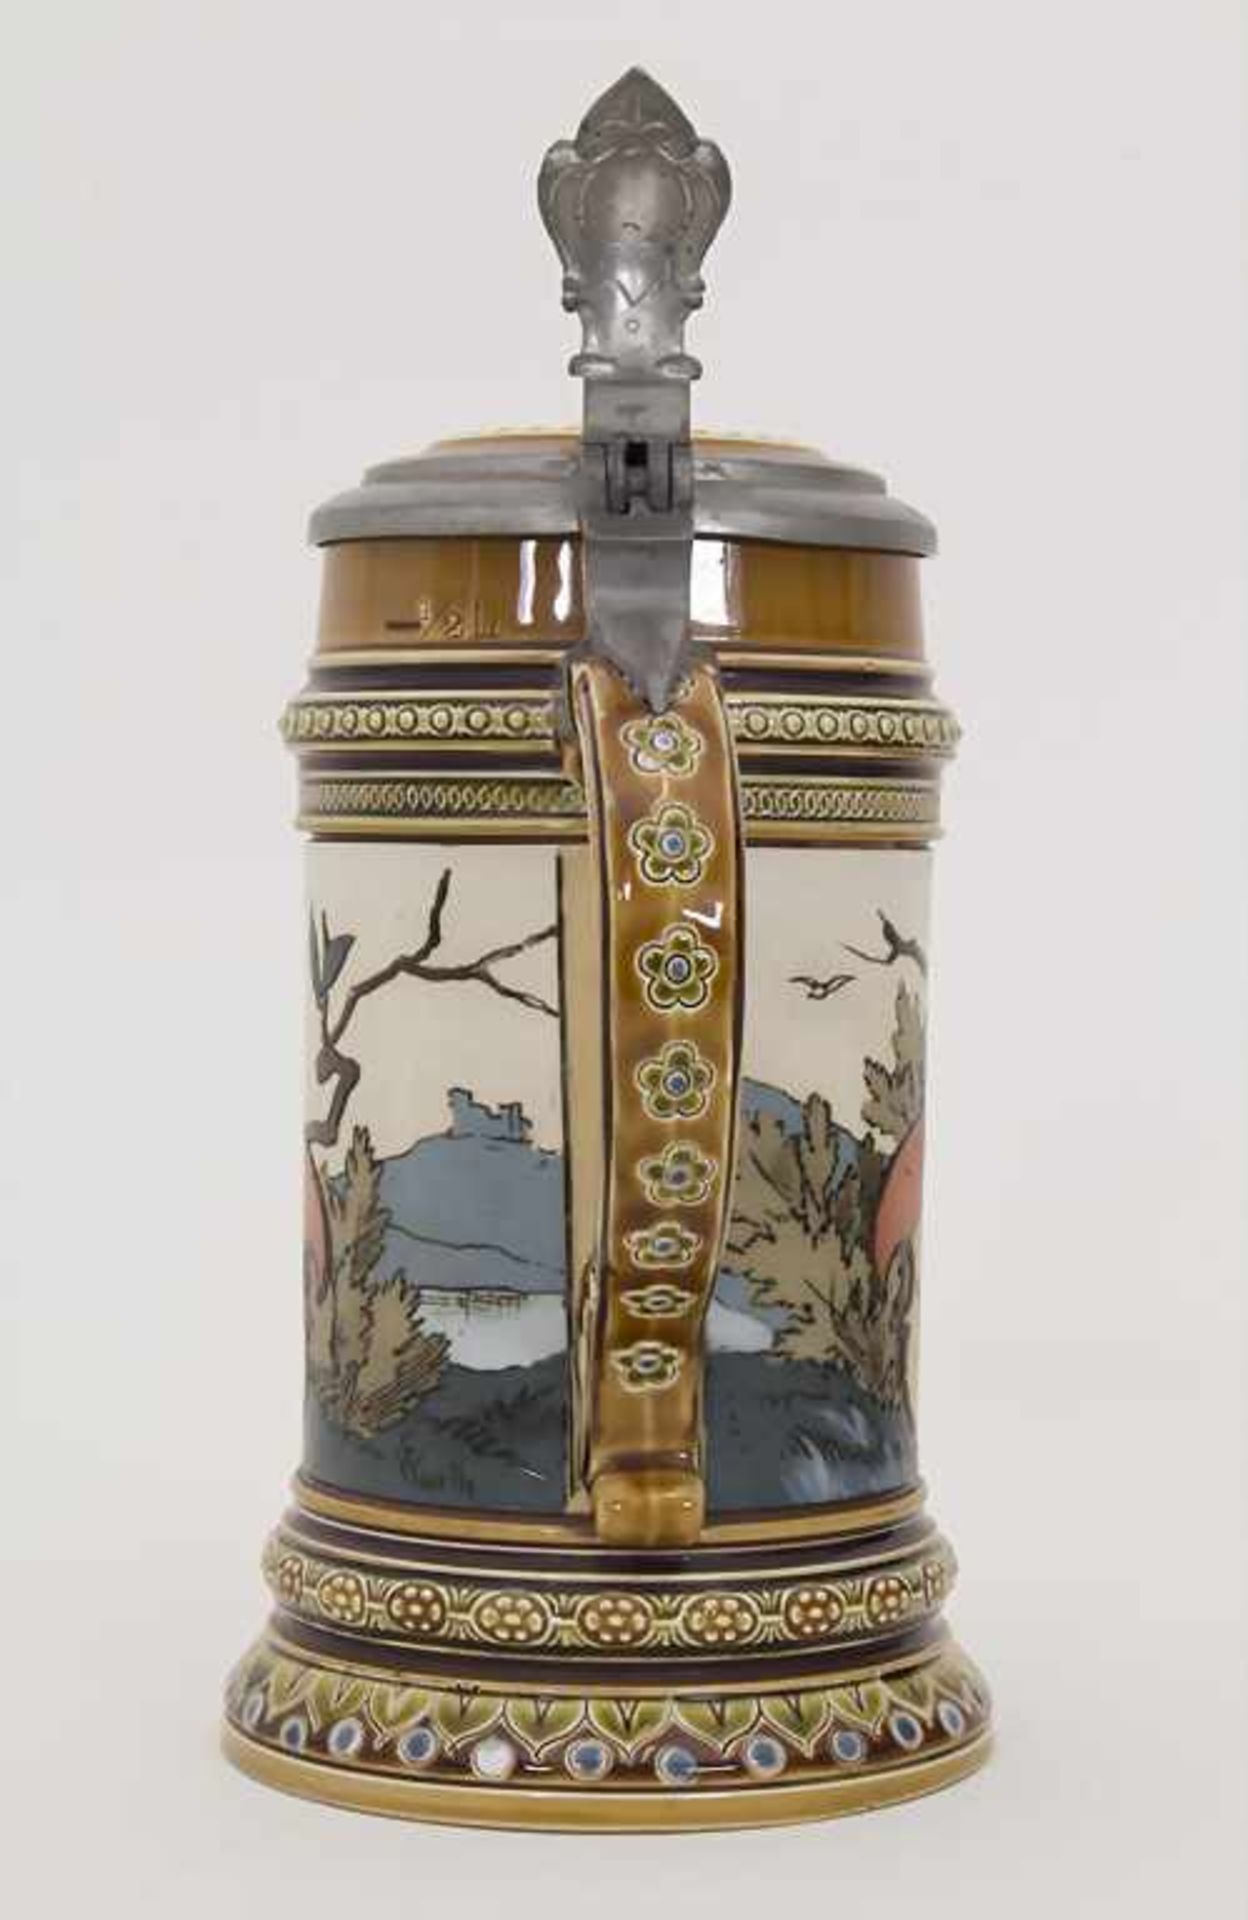 Bierkrug 0,5 L / A stoneware beer mug, Mettlach, Entwurf Christian Warth, um 1894 - Bild 3 aus 8